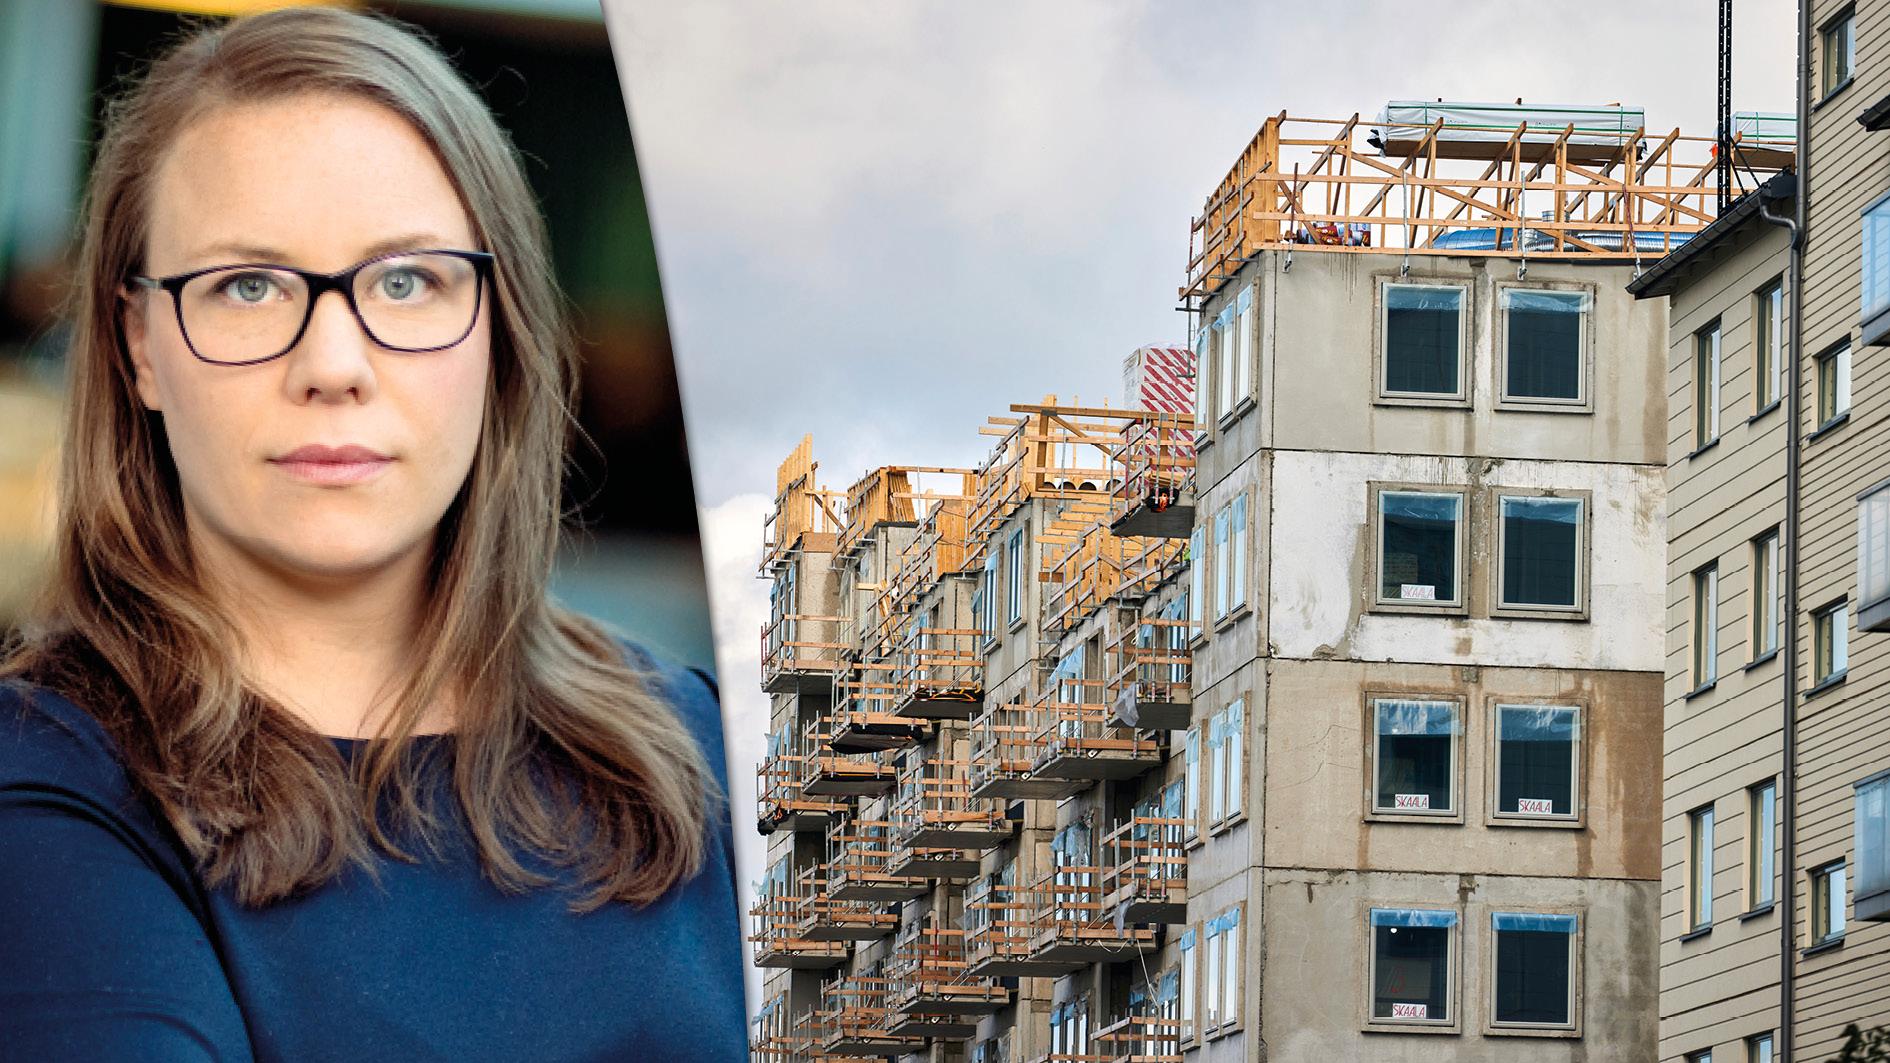 Nyproduktionen av bostäder har mer än halverats på två år. Därför har regeringen kallat byggbranschens aktörer till ett krismöte nu på tisdag. Här är reformerna som krävs, skriver Anna Broman, Byggföretagen.